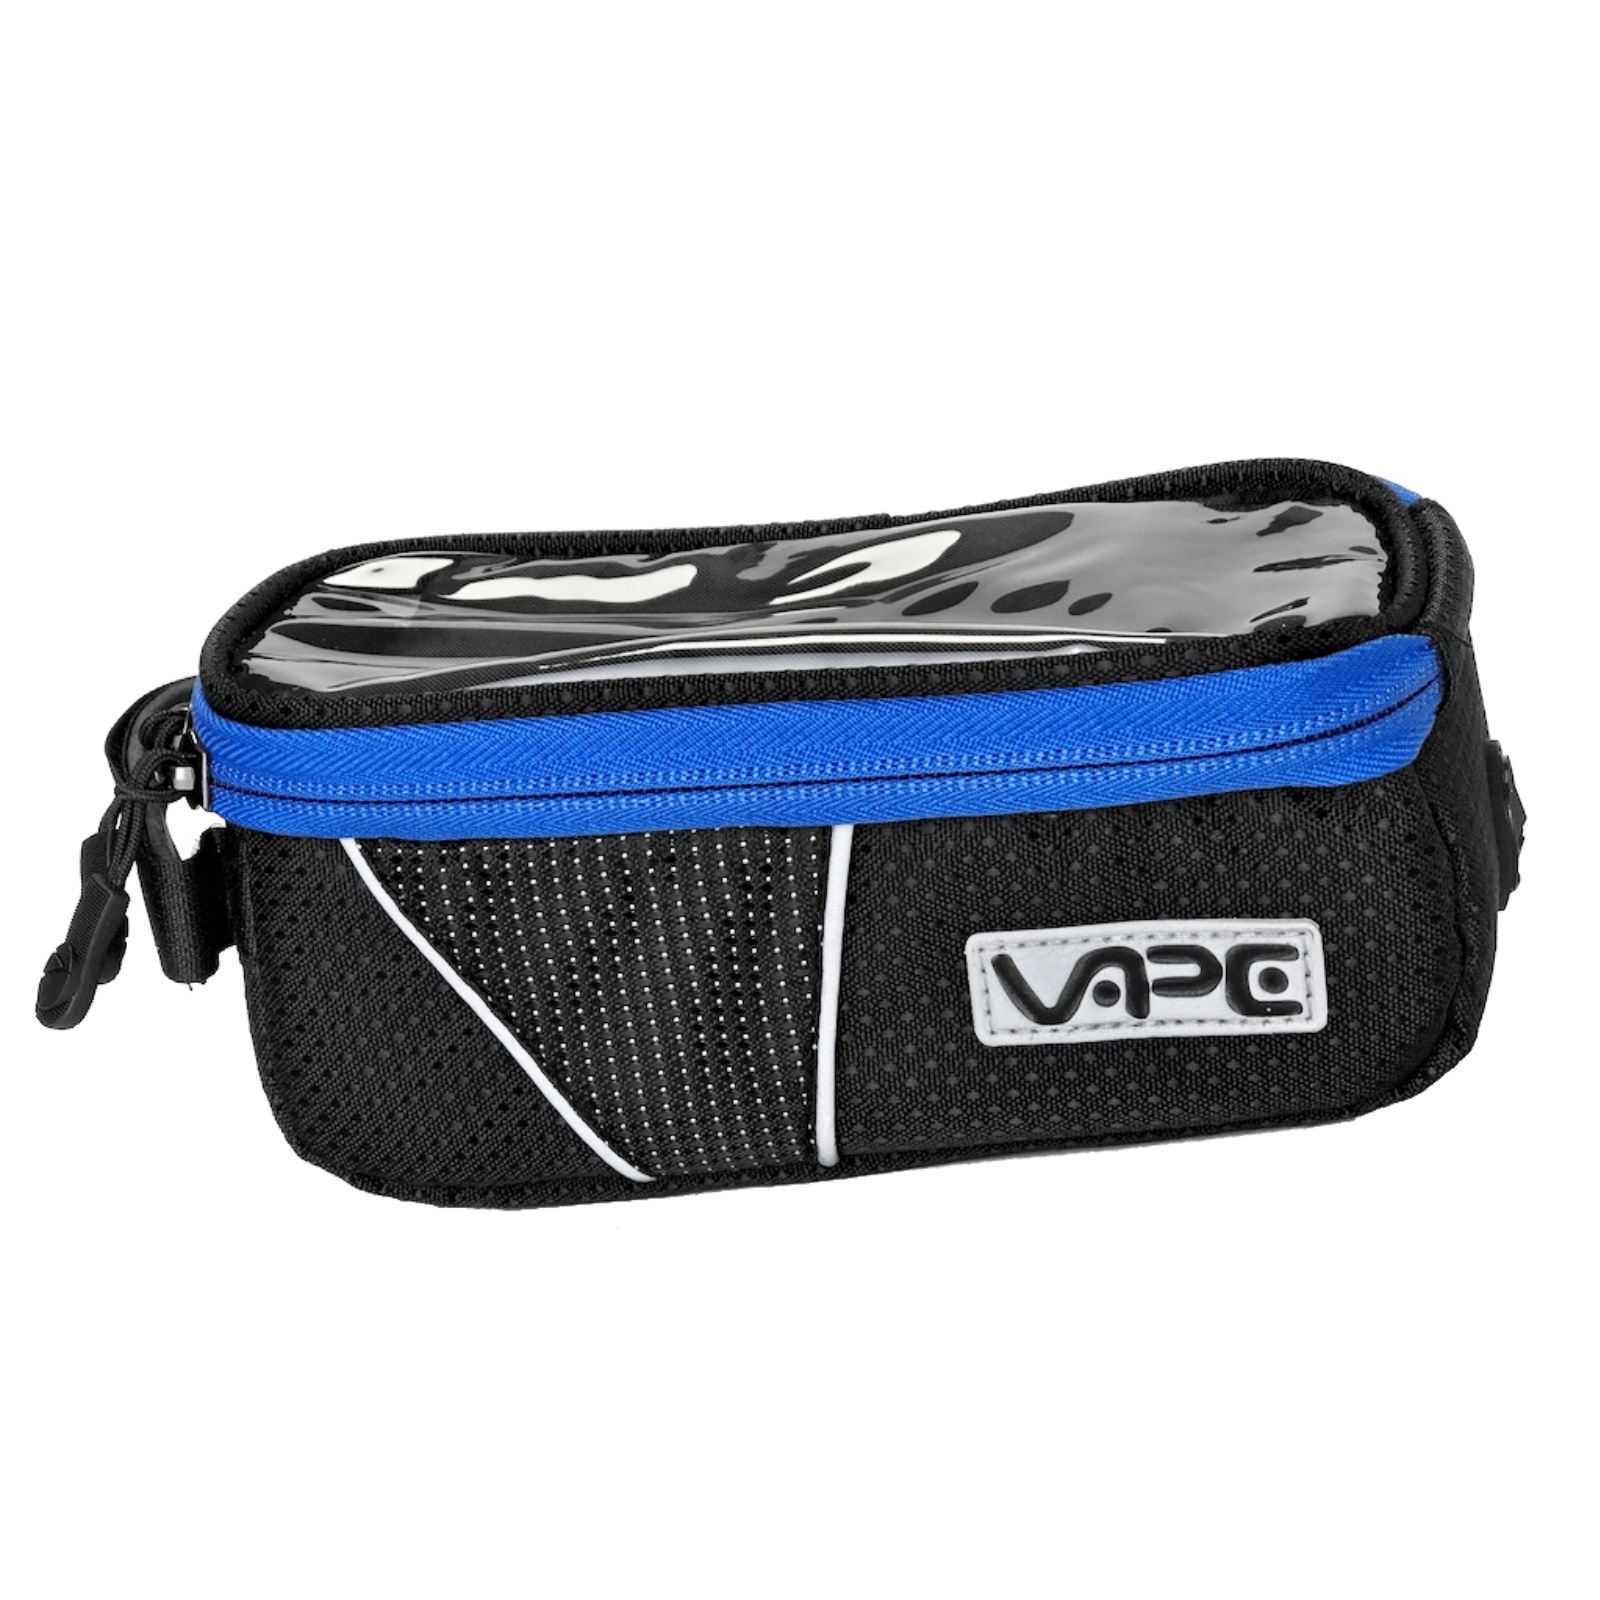 Cyklo taška VAPE na mobil 6,7" - modrá